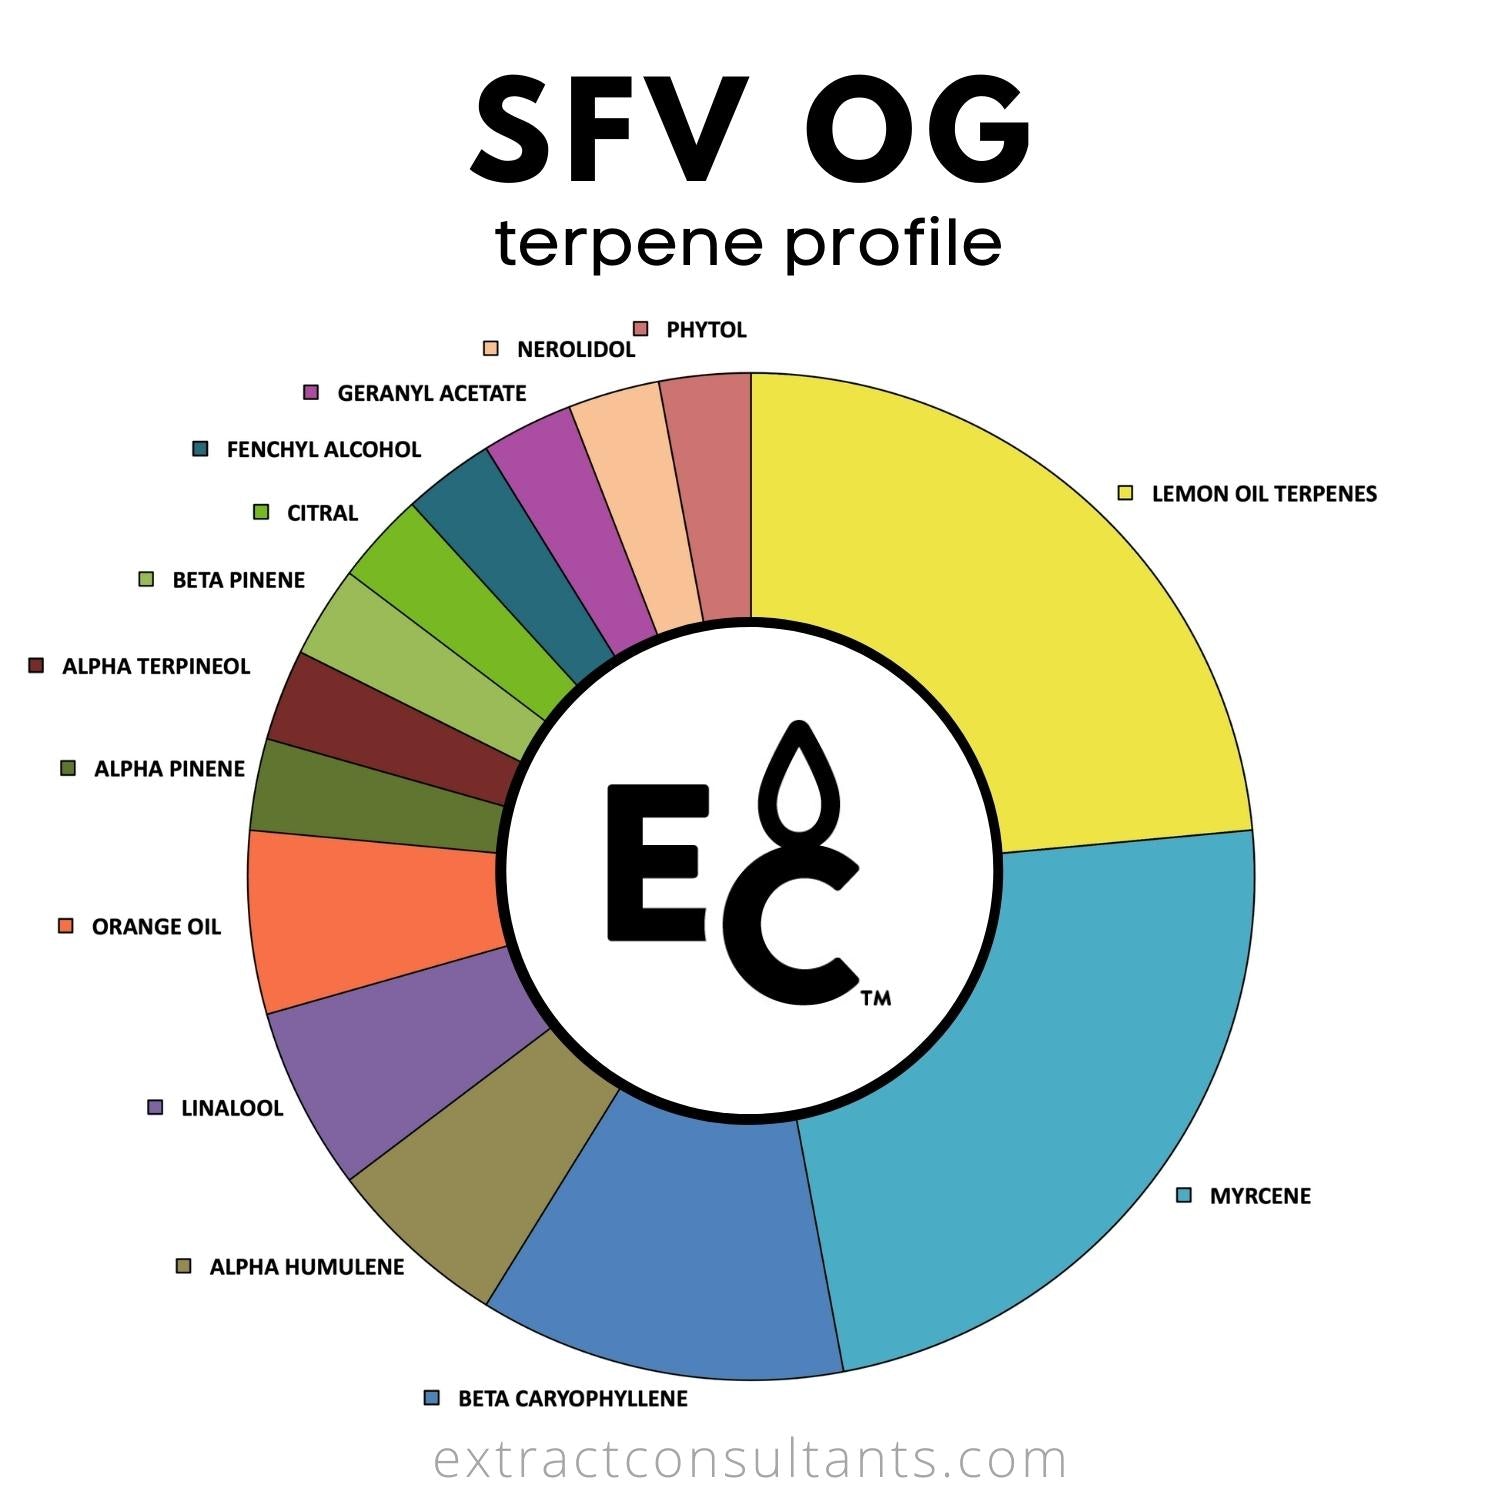 SFV OG terpene profile chart